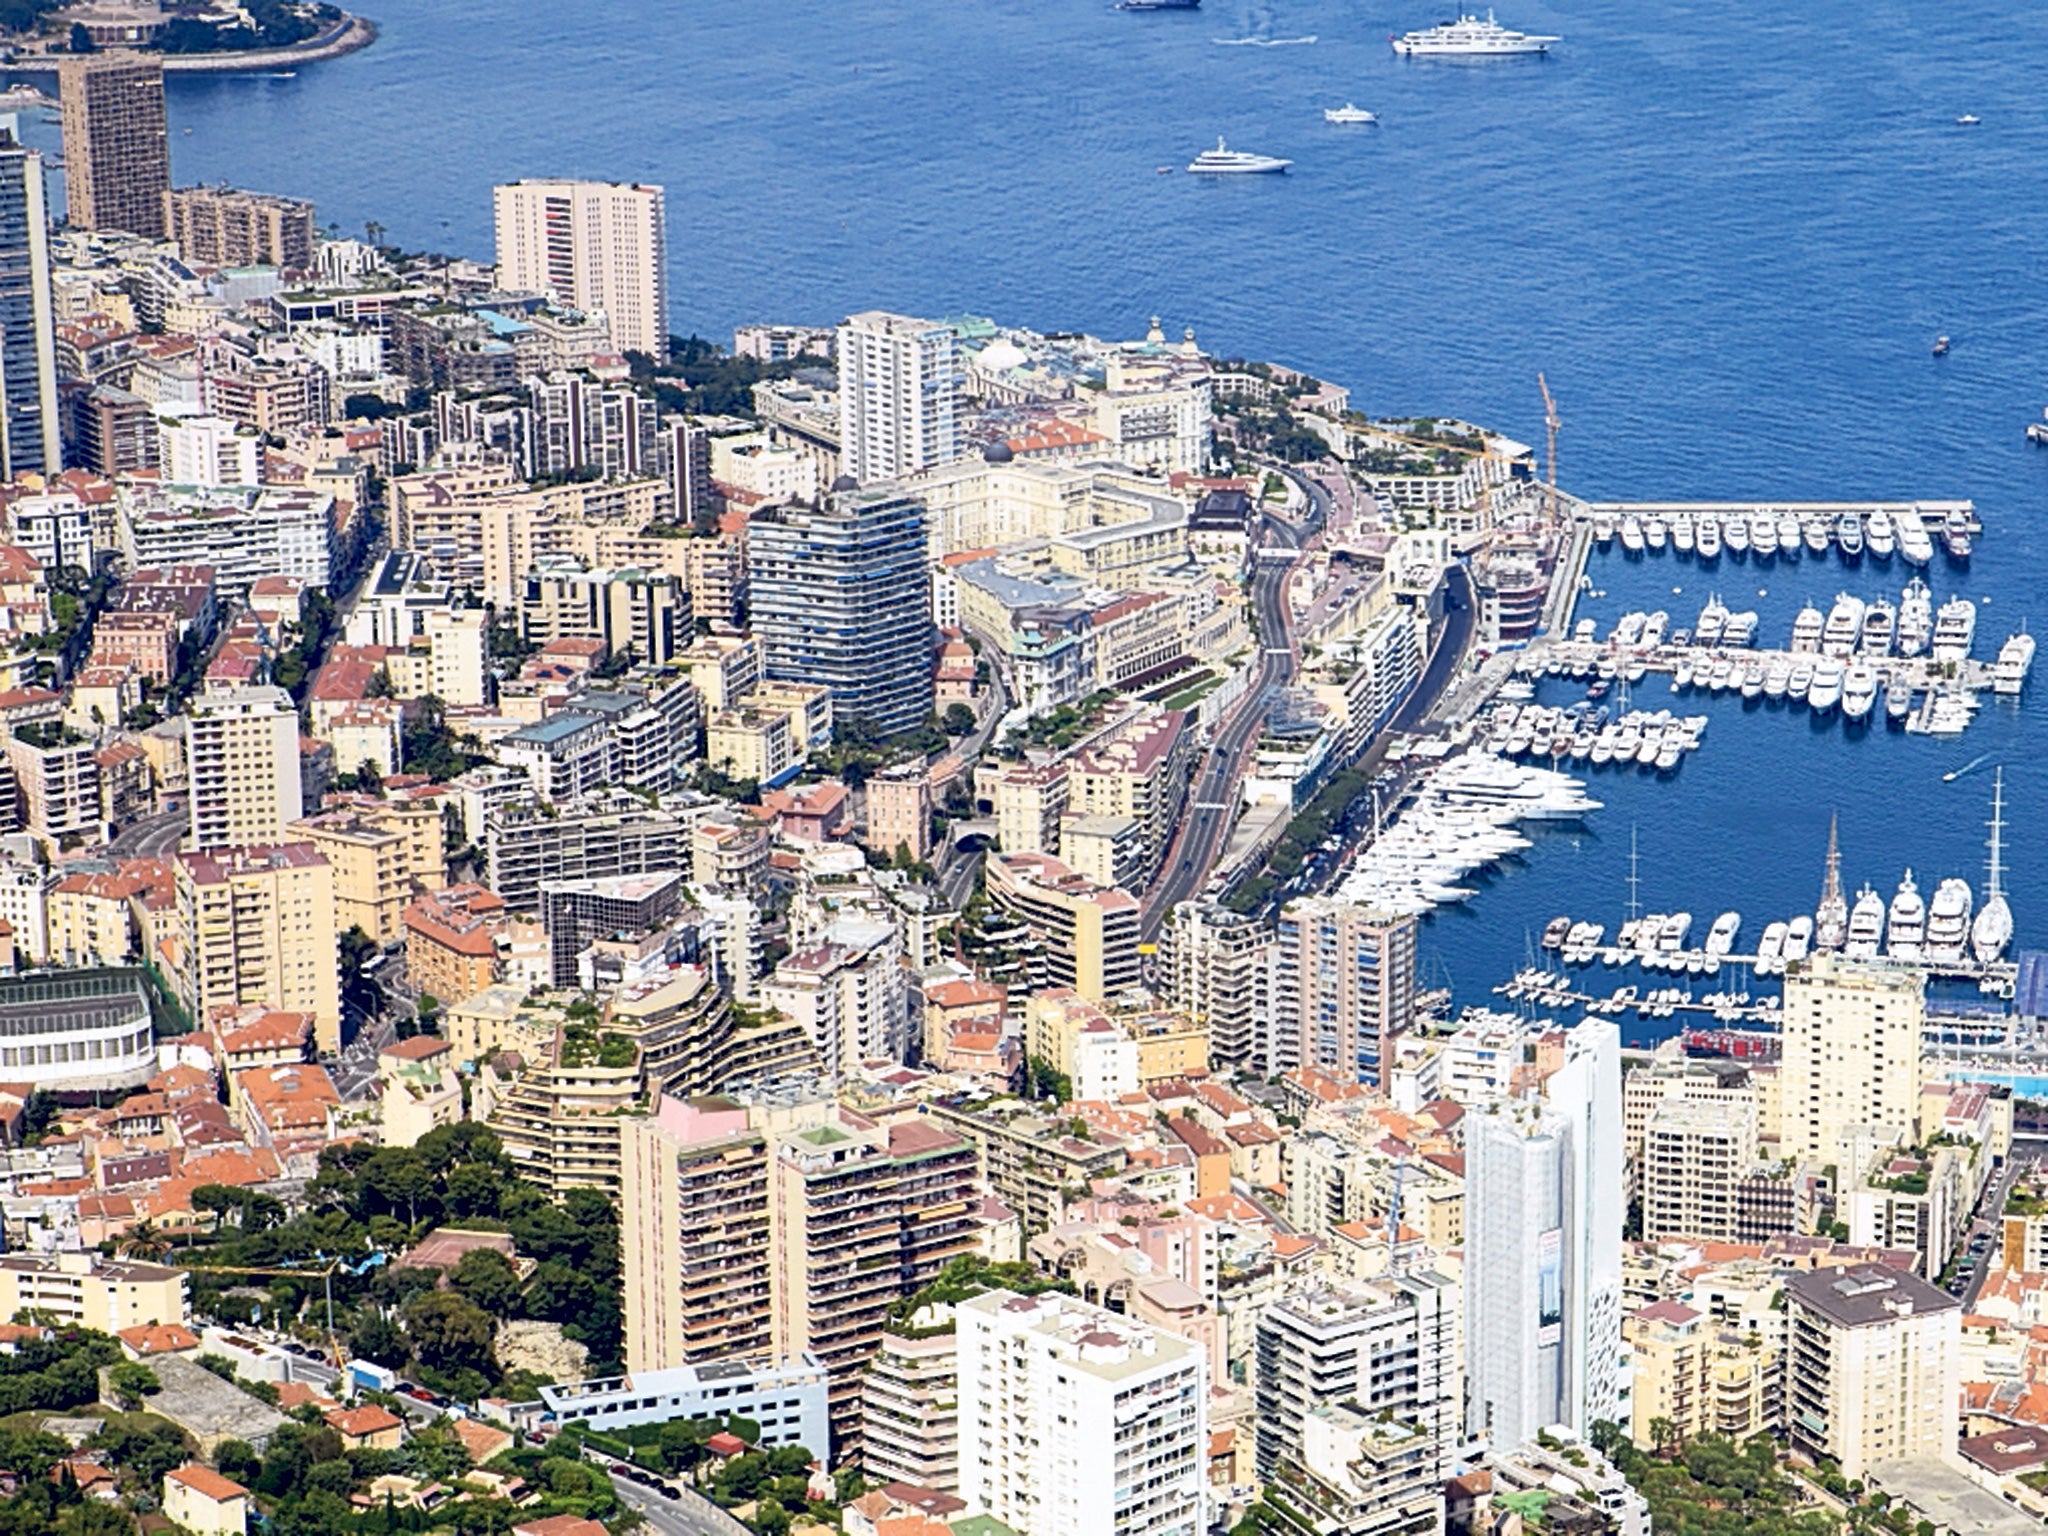 The glitzy port at Monaco